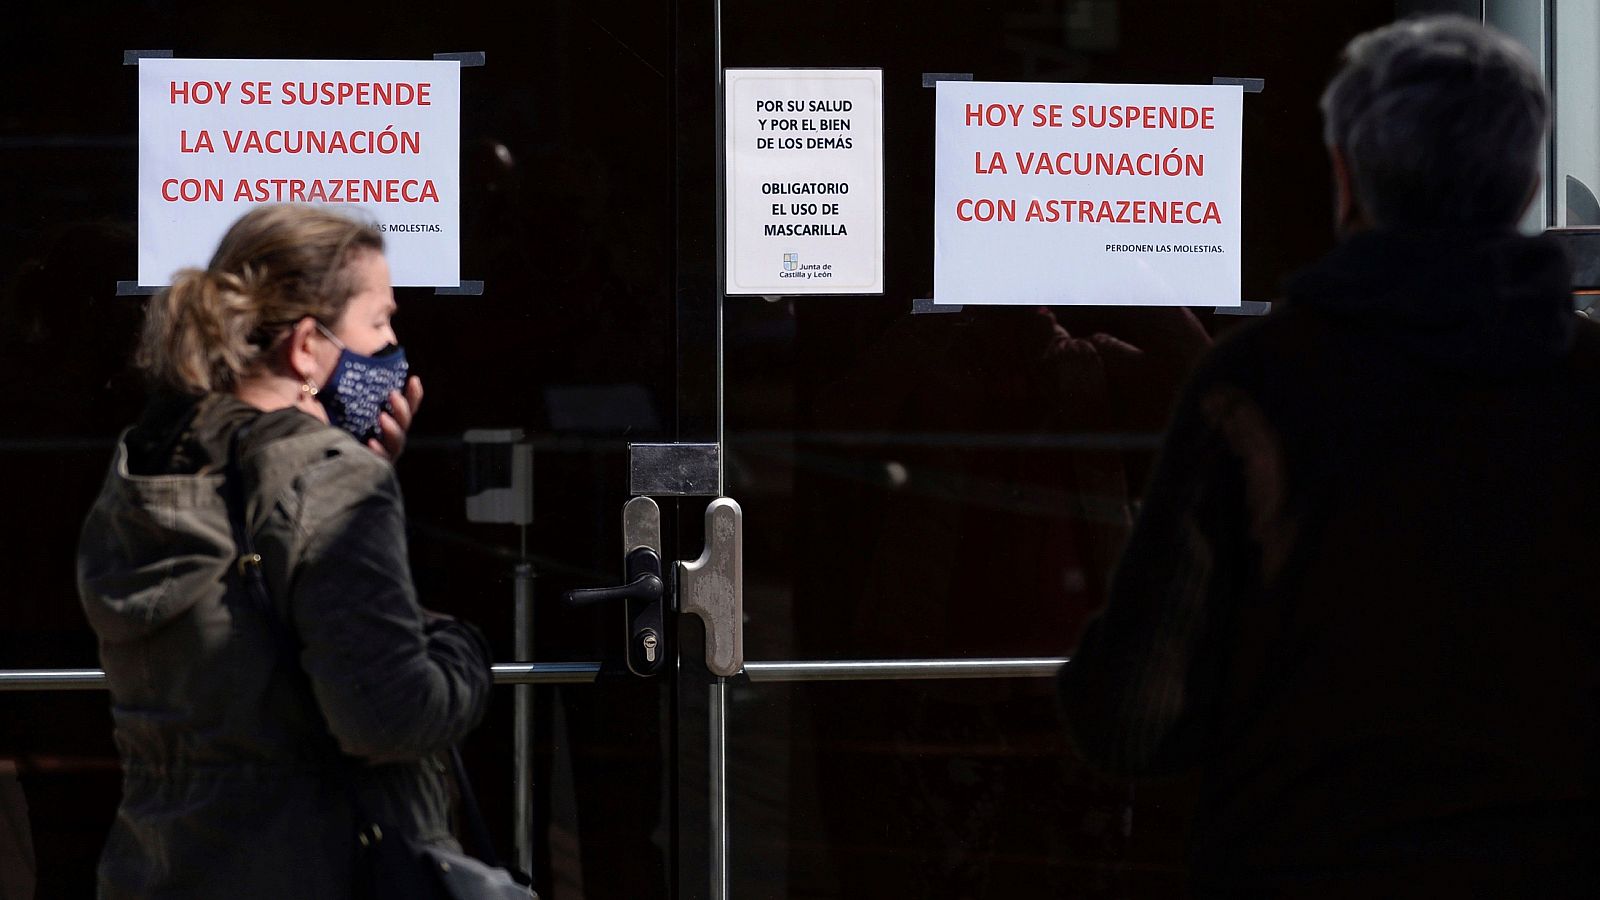 Castilla y León suspende la vacunación con AstraZeneca